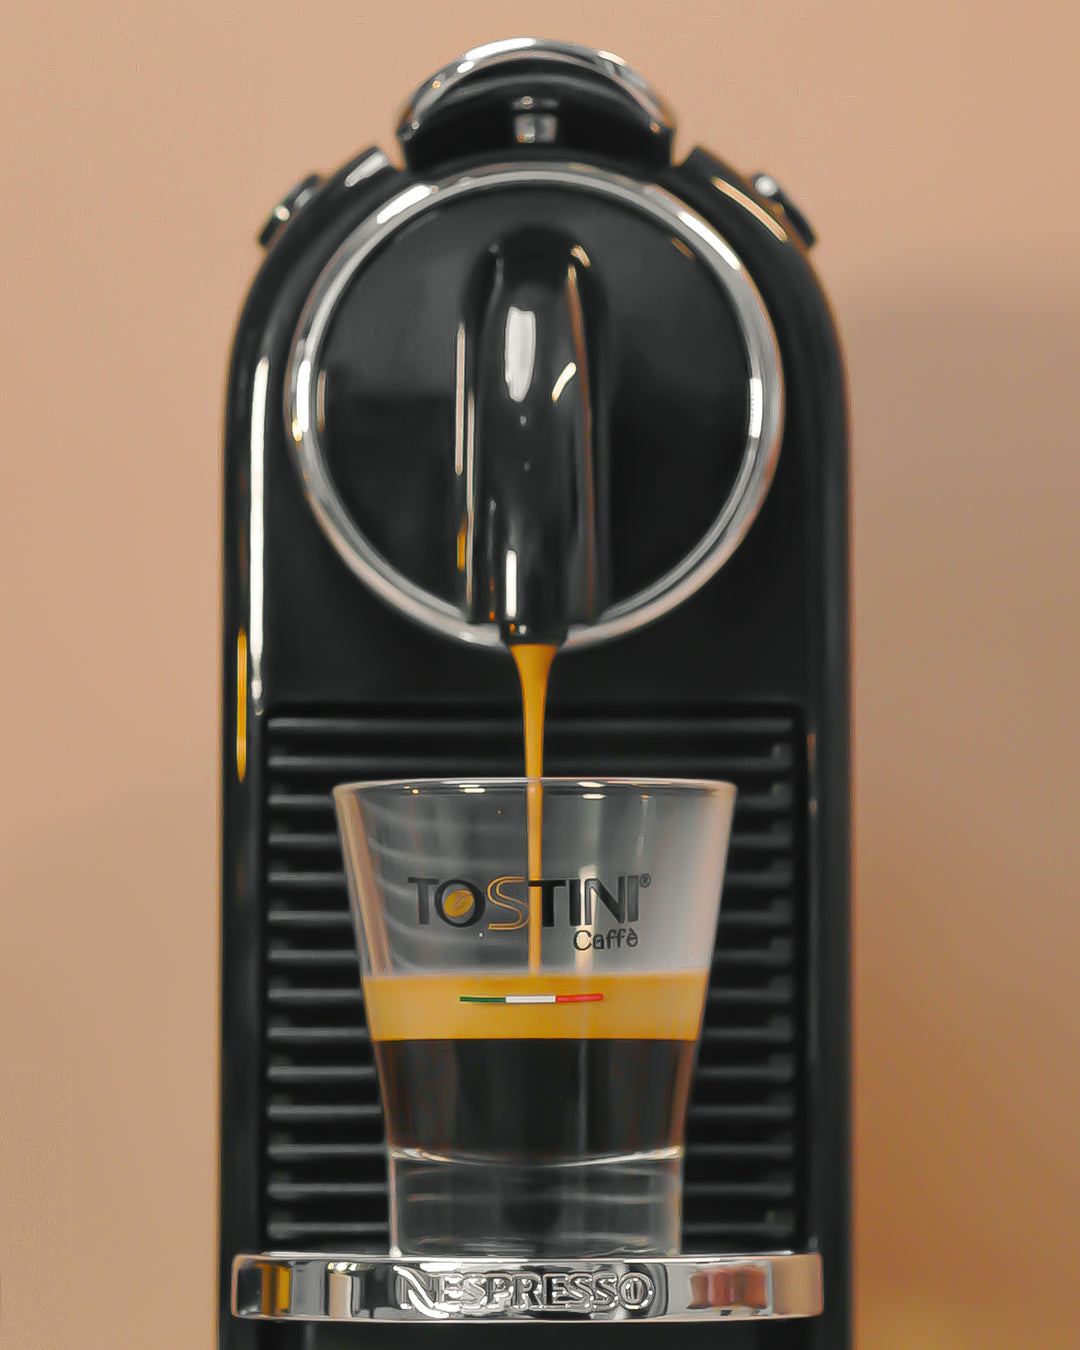 Tostini Nespresso® Dark Capsules